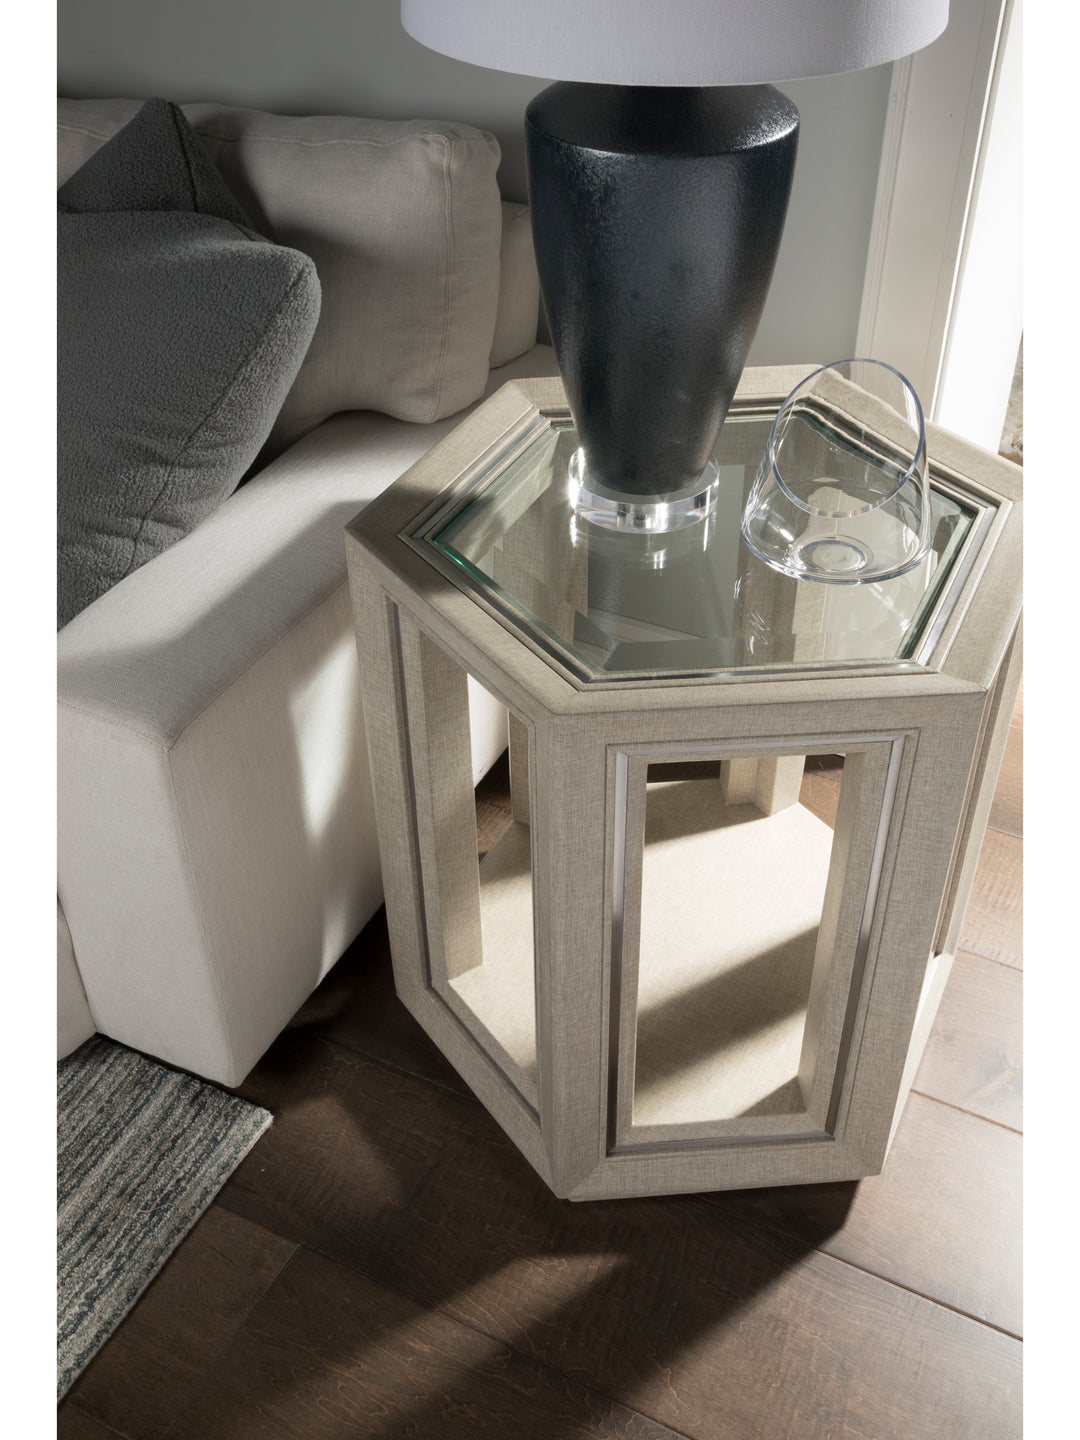 American Home Furniture | Artistica Home  - Signature Designs Zeitgeist Linen Hexagonal End Table